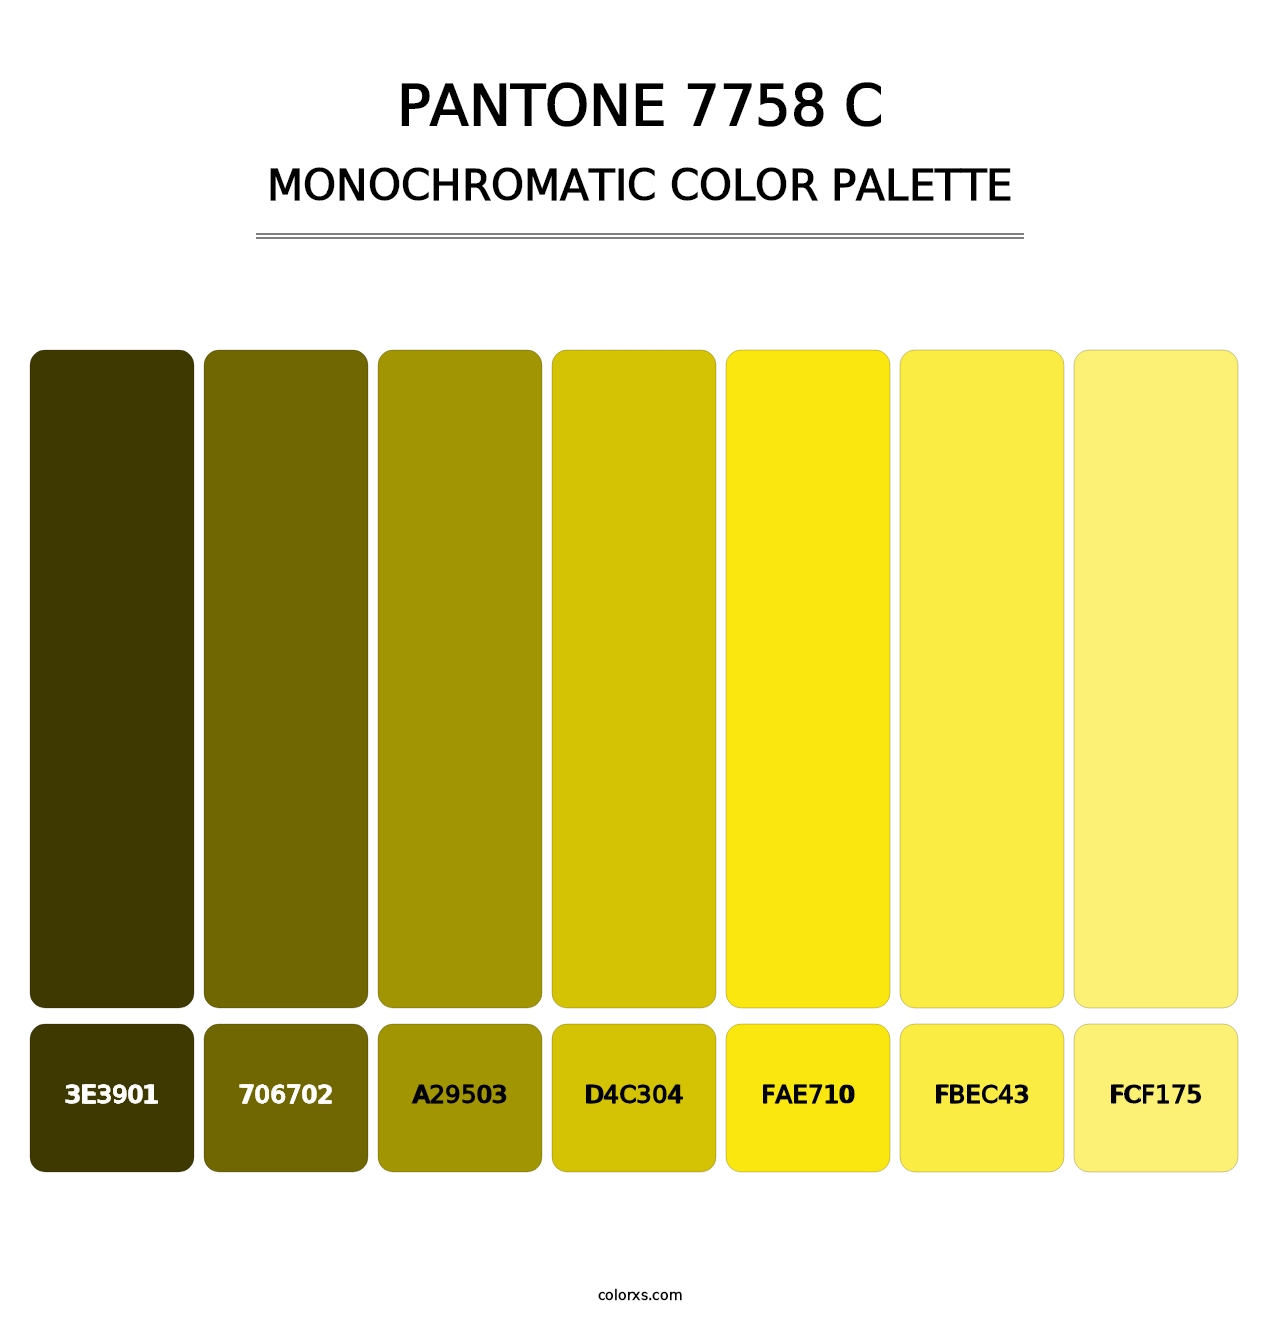 PANTONE 7758 C - Monochromatic Color Palette